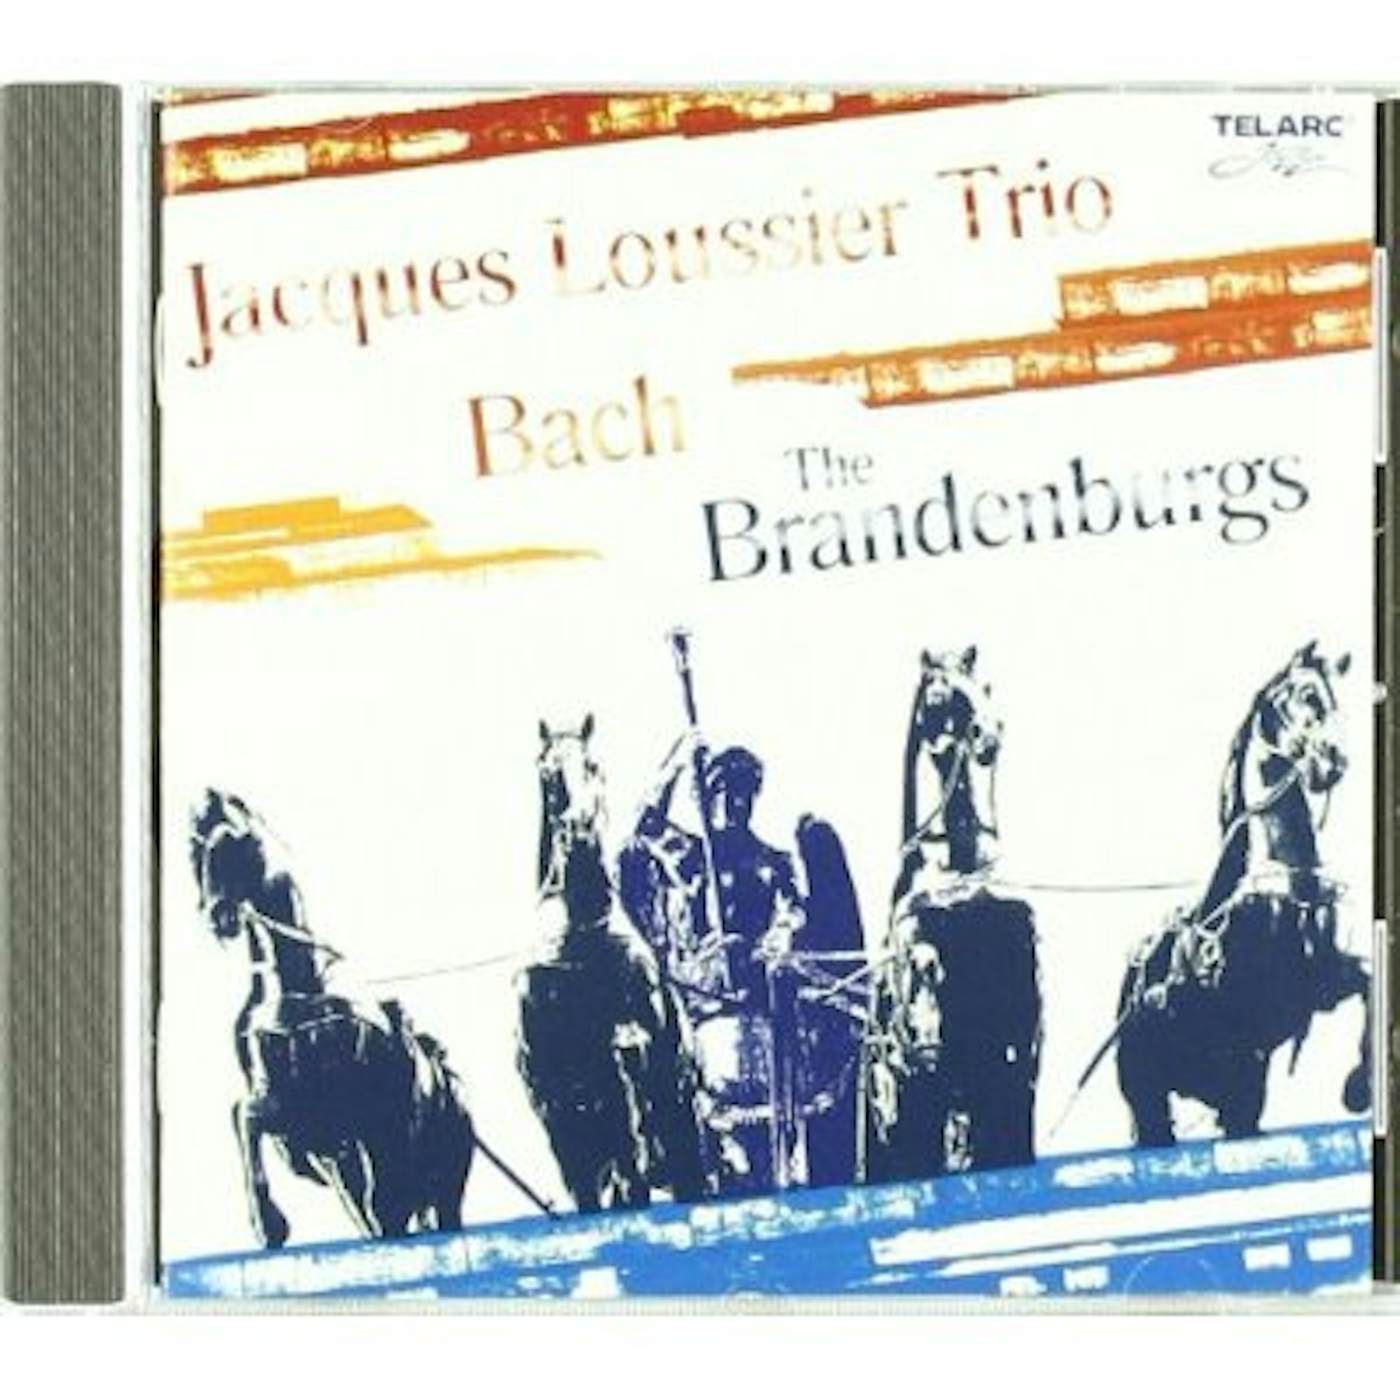 Jacques Loussier BACH: THE BRANDENBURGS CD